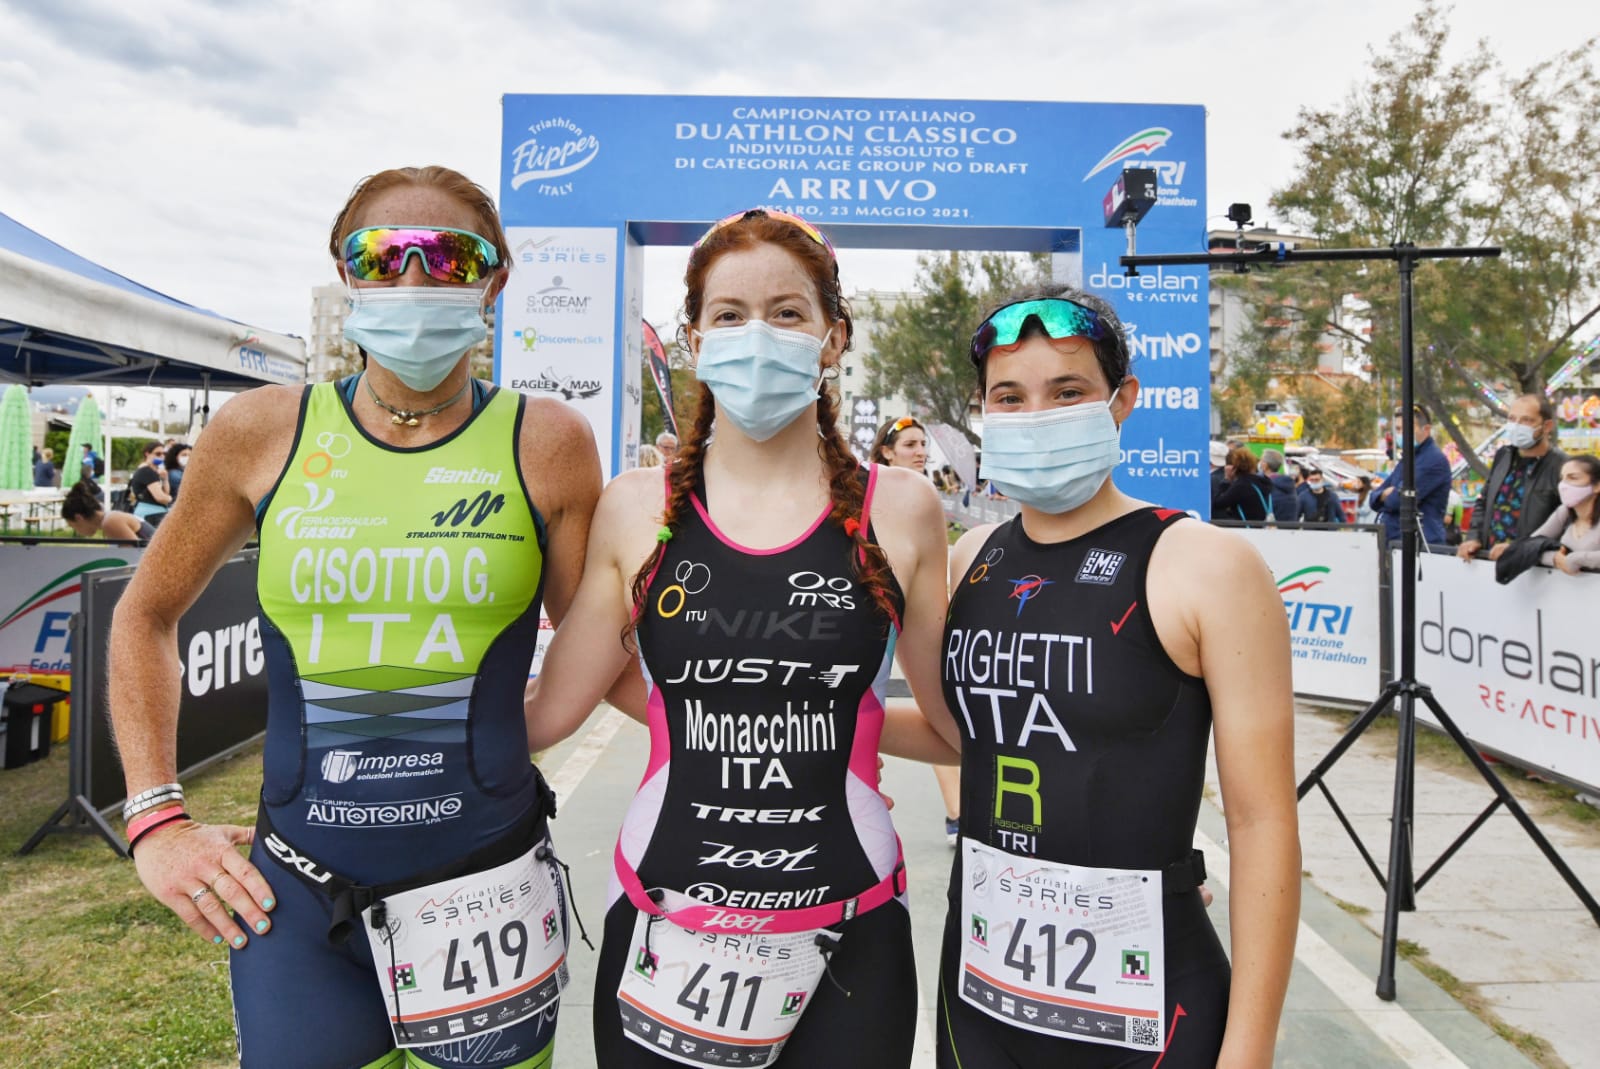 Elisa Monacchini e Michelangelo Parmigiani  conquistano il Triathlon Città di Pesaro